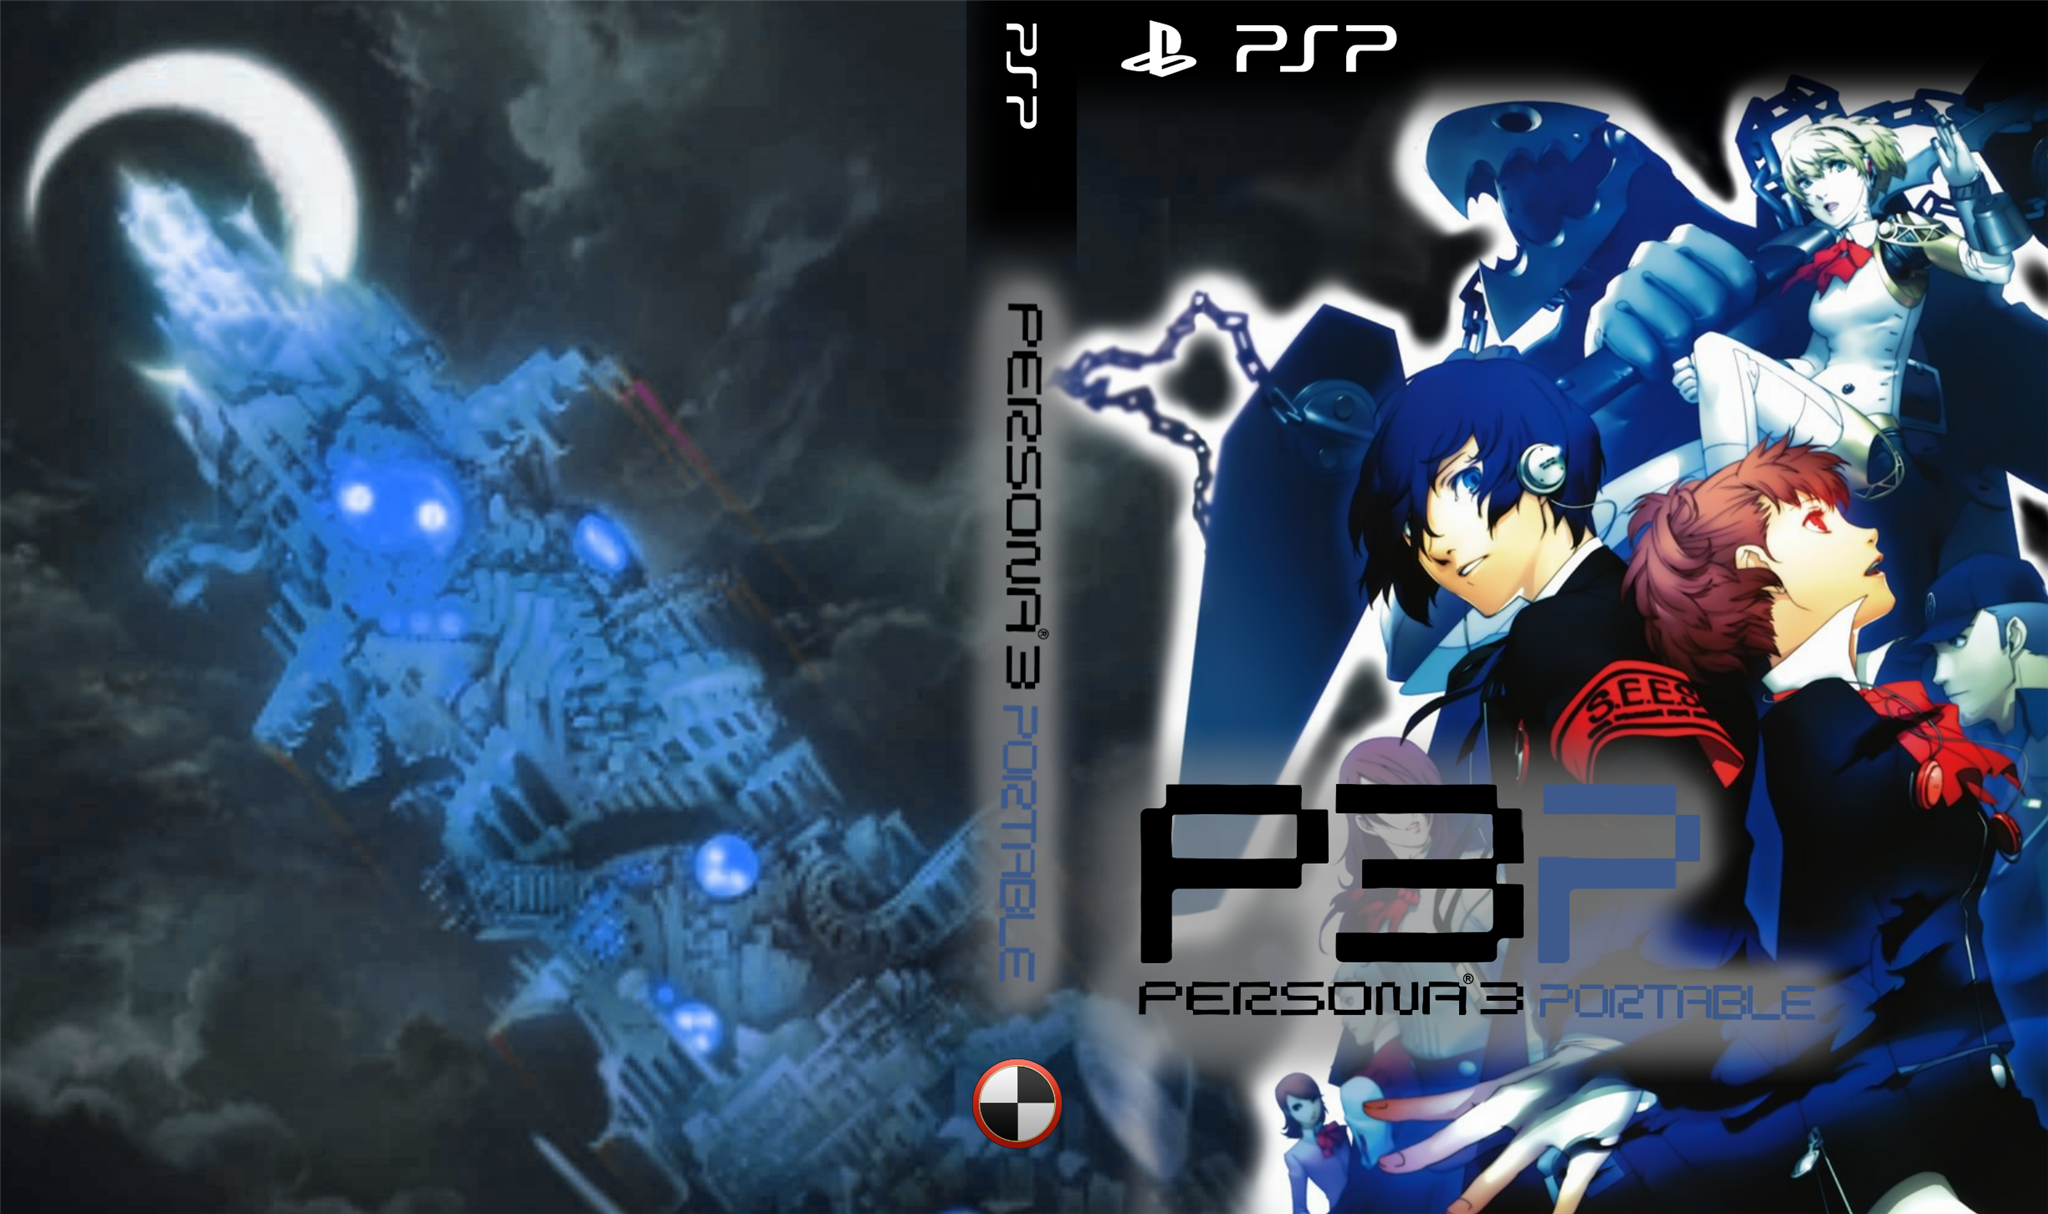 Shin Megami Tensei: Persona 3 Portable box cover